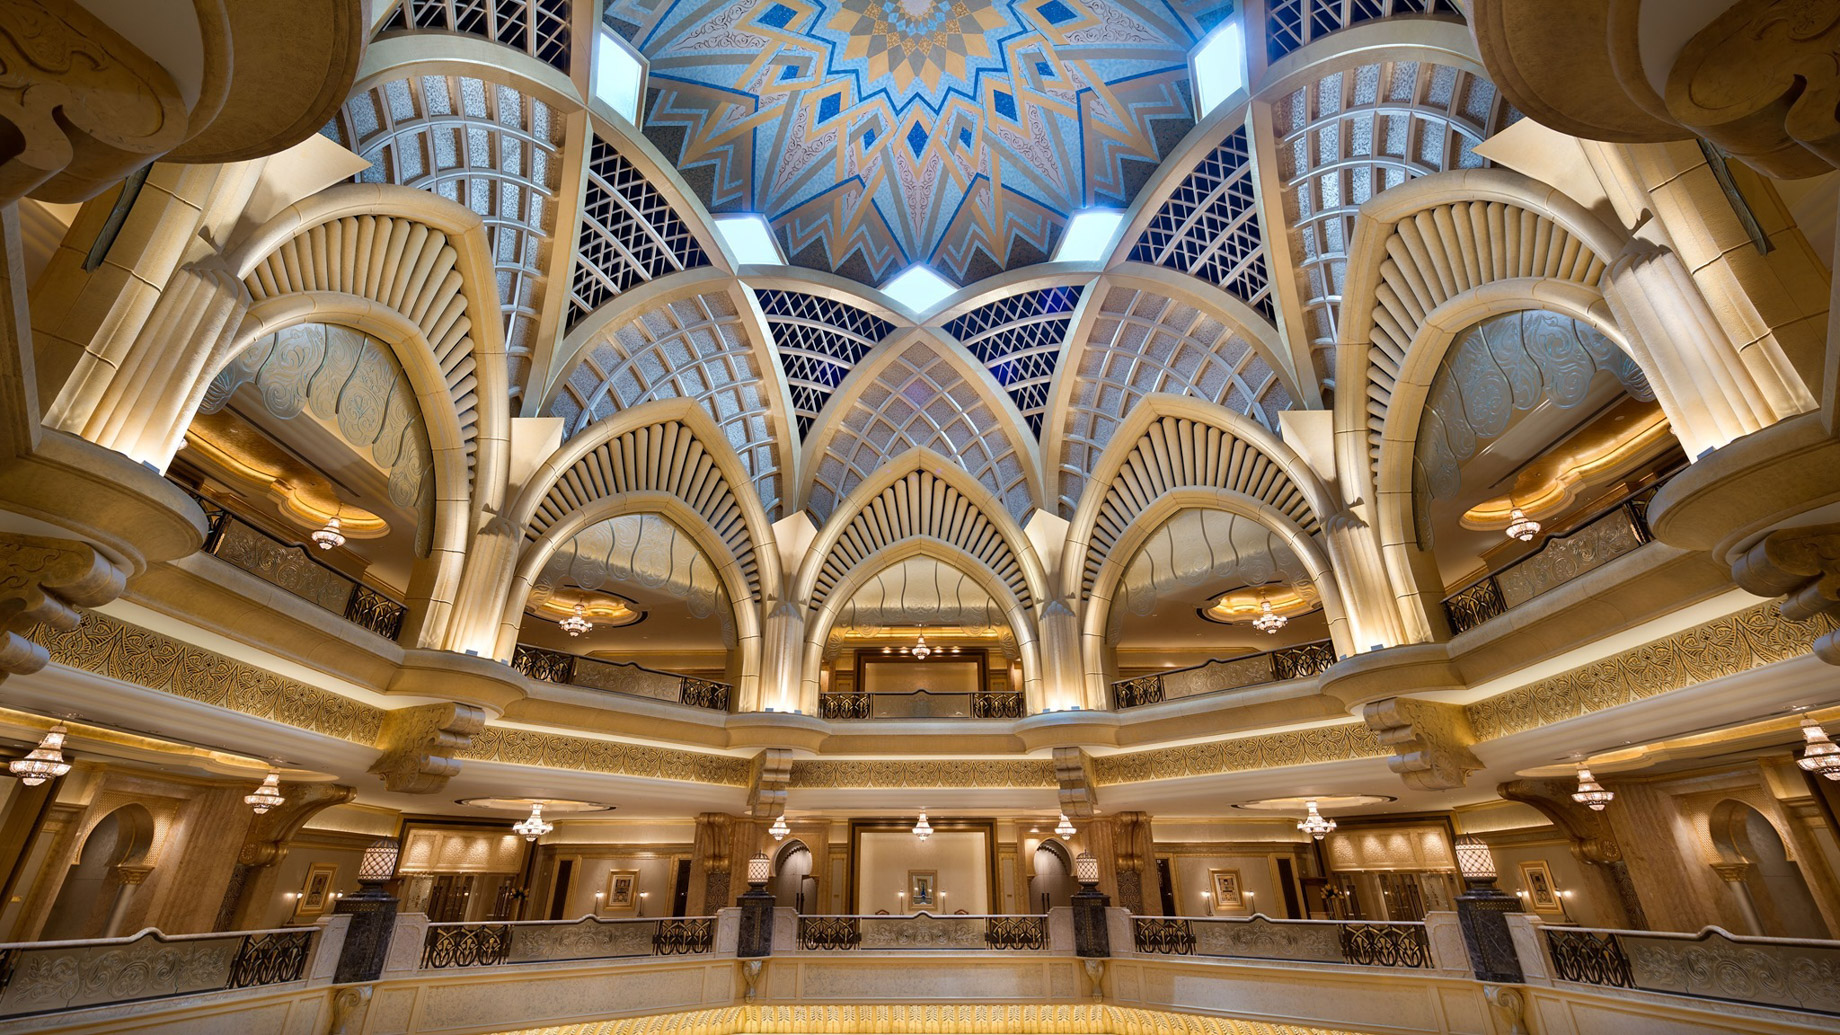 Emirates Palace Abu Dhabi Hotel – Abu Dhabi, UAE – Ceiling Dome